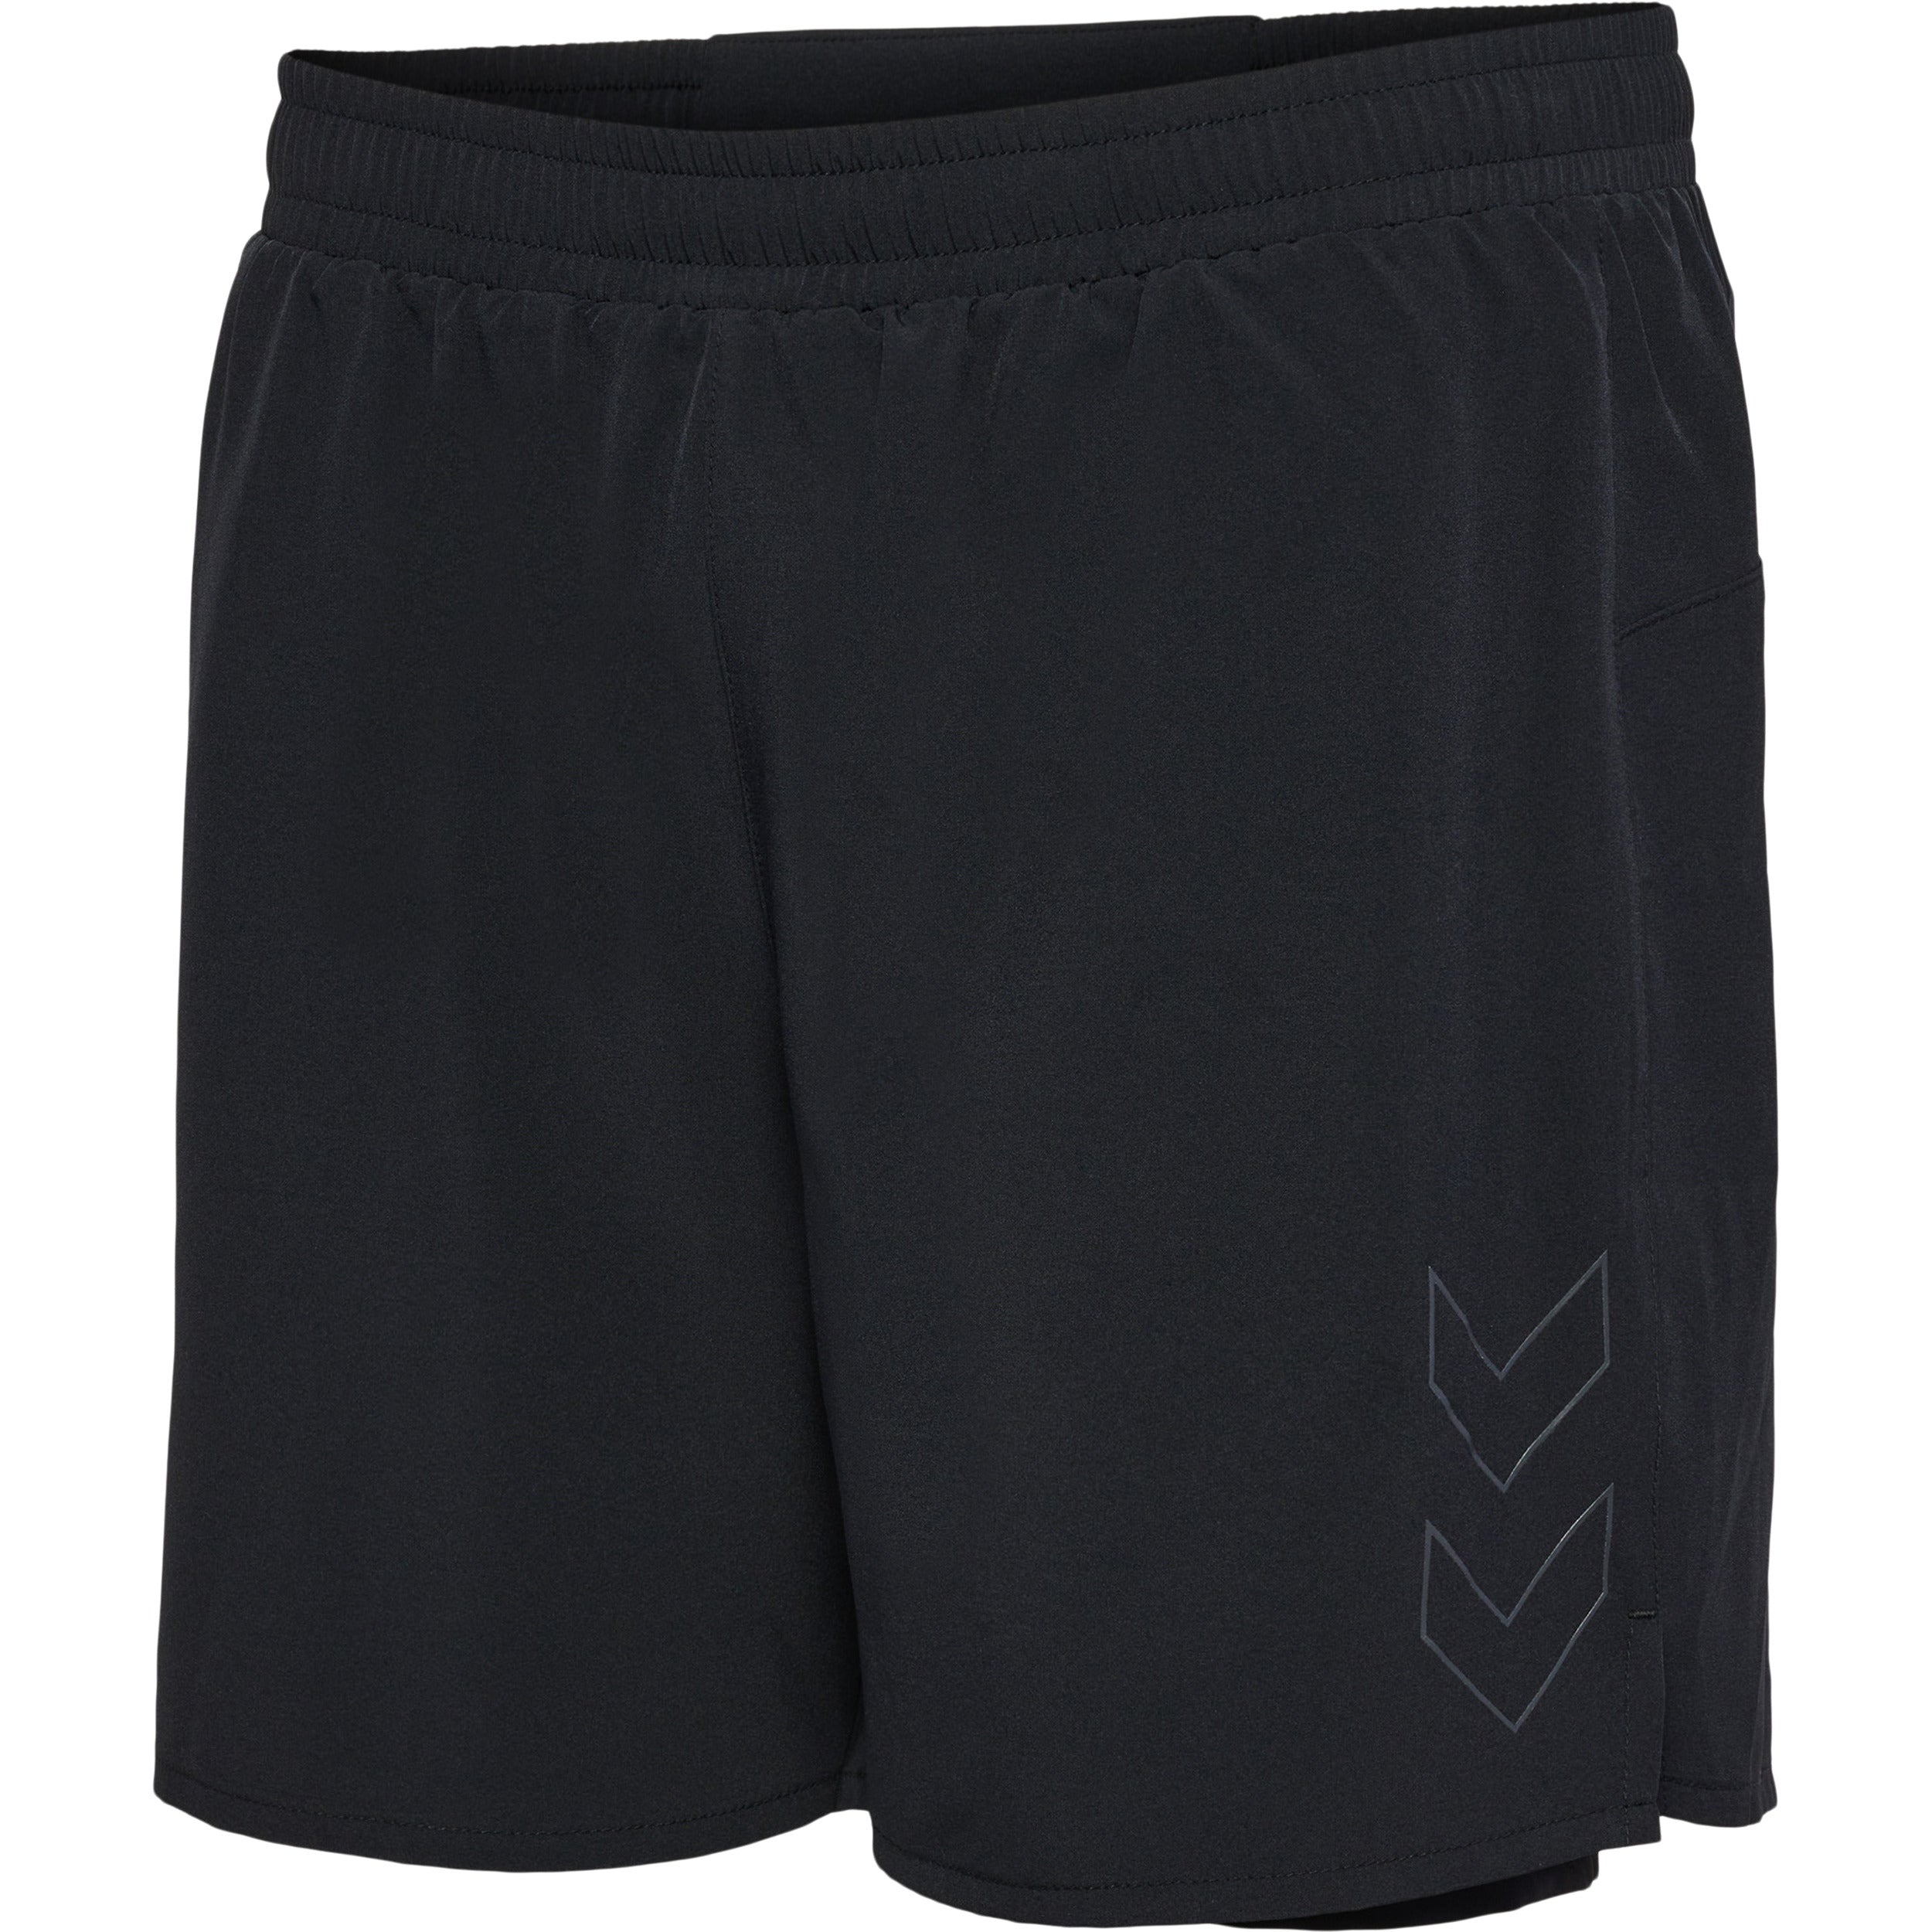 Brug Hummel Fast 2 In 1 Shorts - Black til en forbedret oplevelse